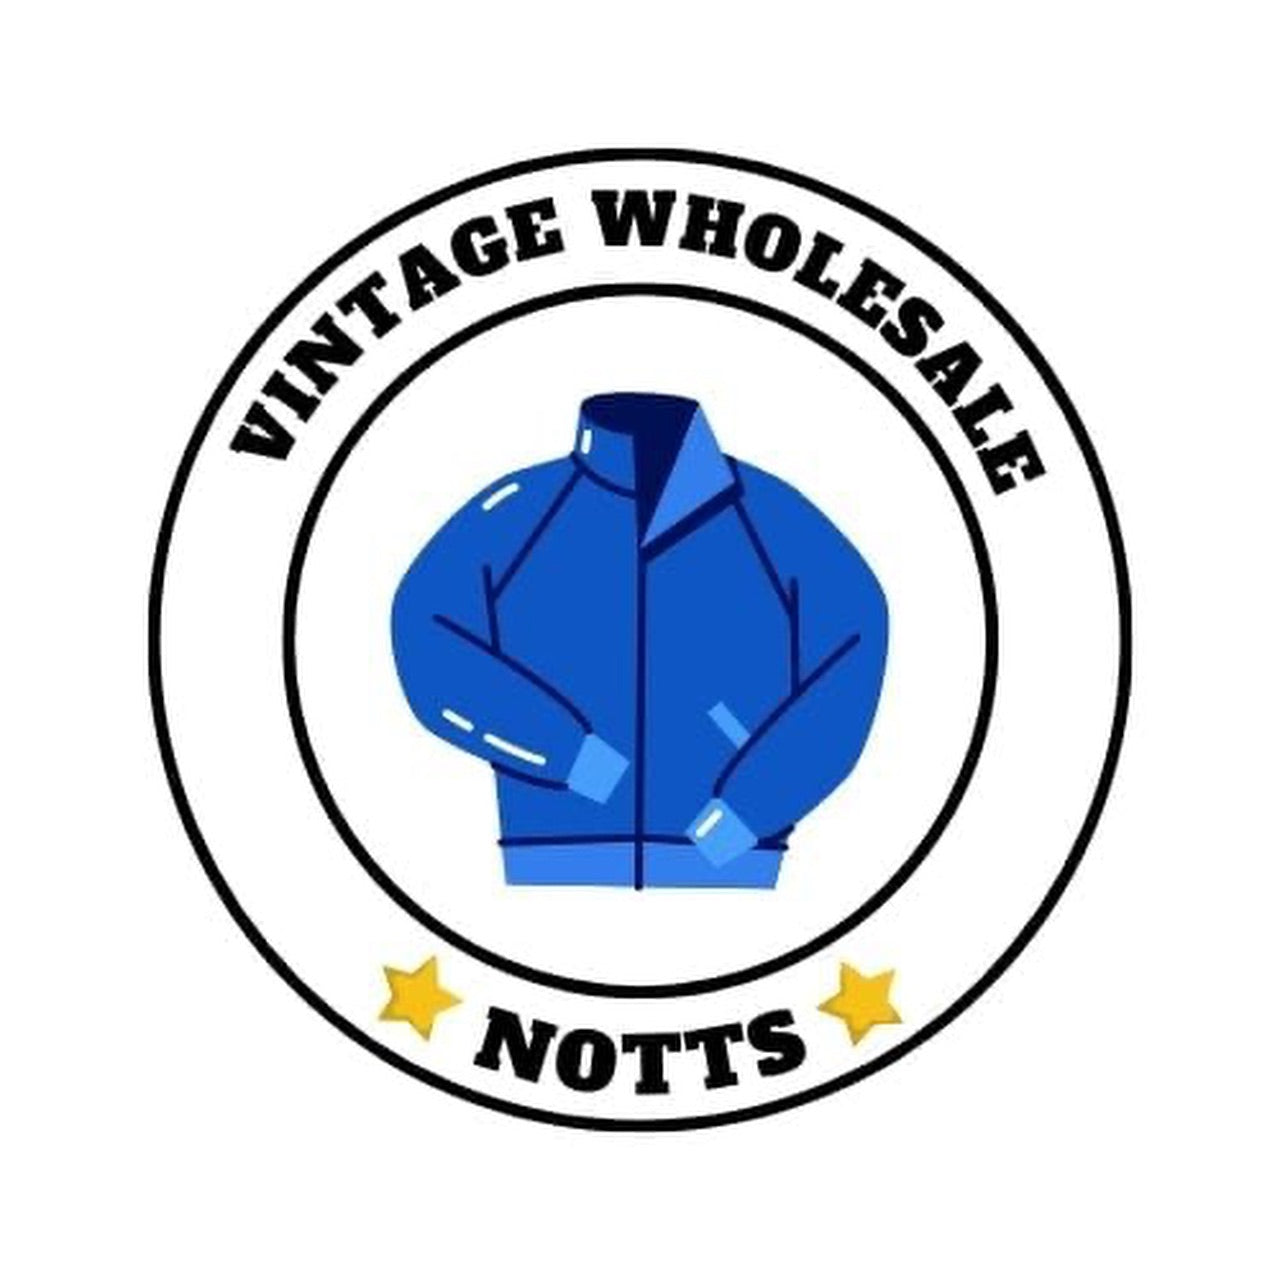 vintage-wholesaler-notts